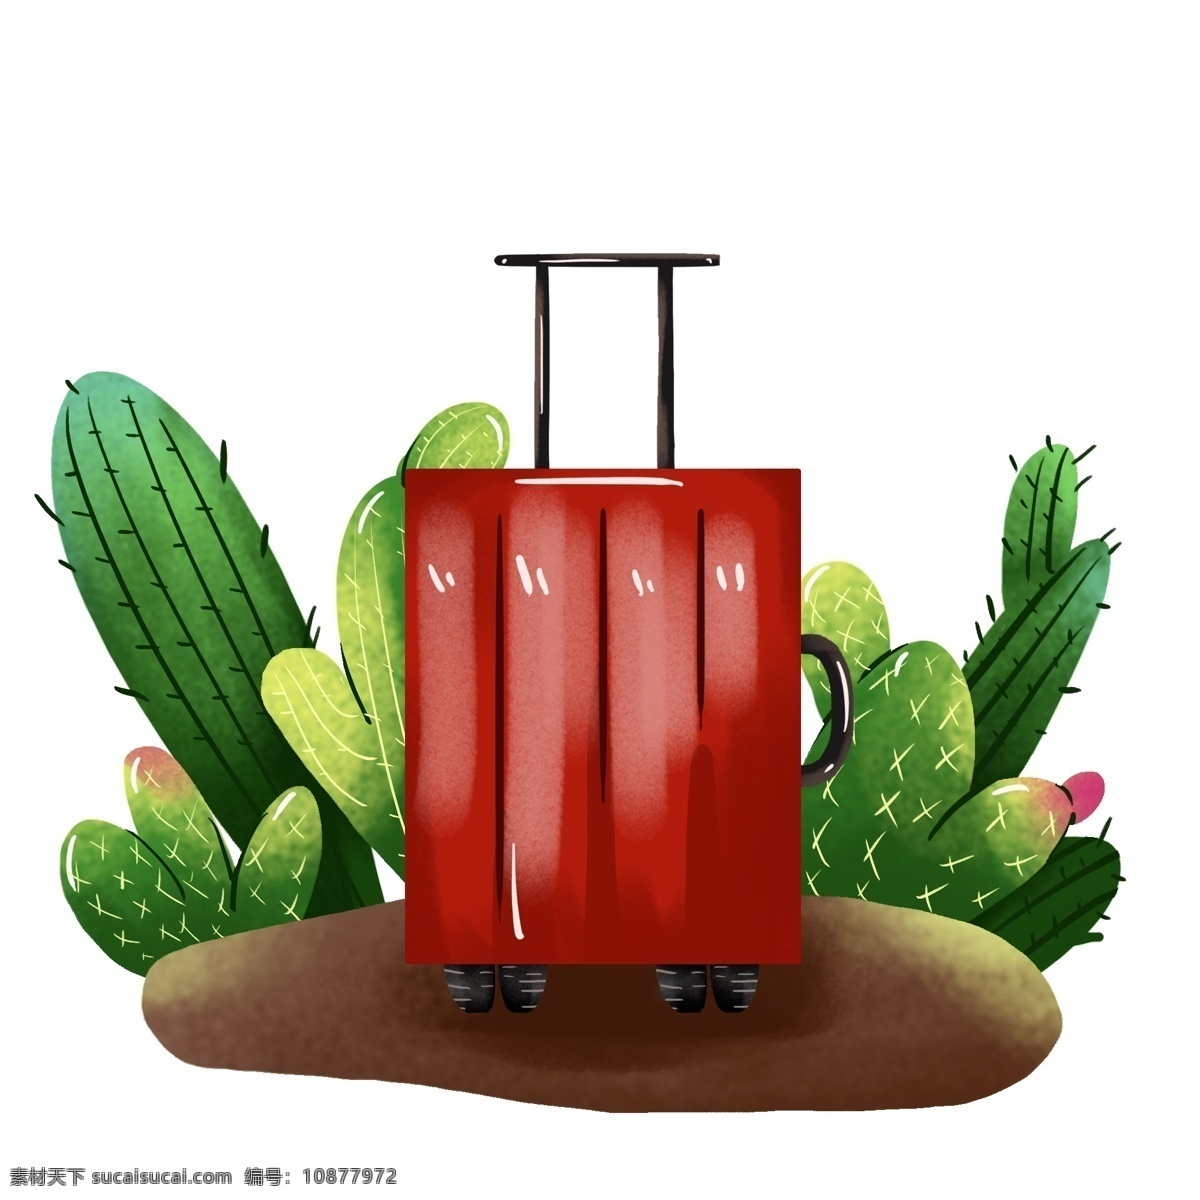 中国旅游 日 拉杆箱 行李箱 手绘 元素 中国旅游日 旅行 旅游 度假 行李 工具 出行